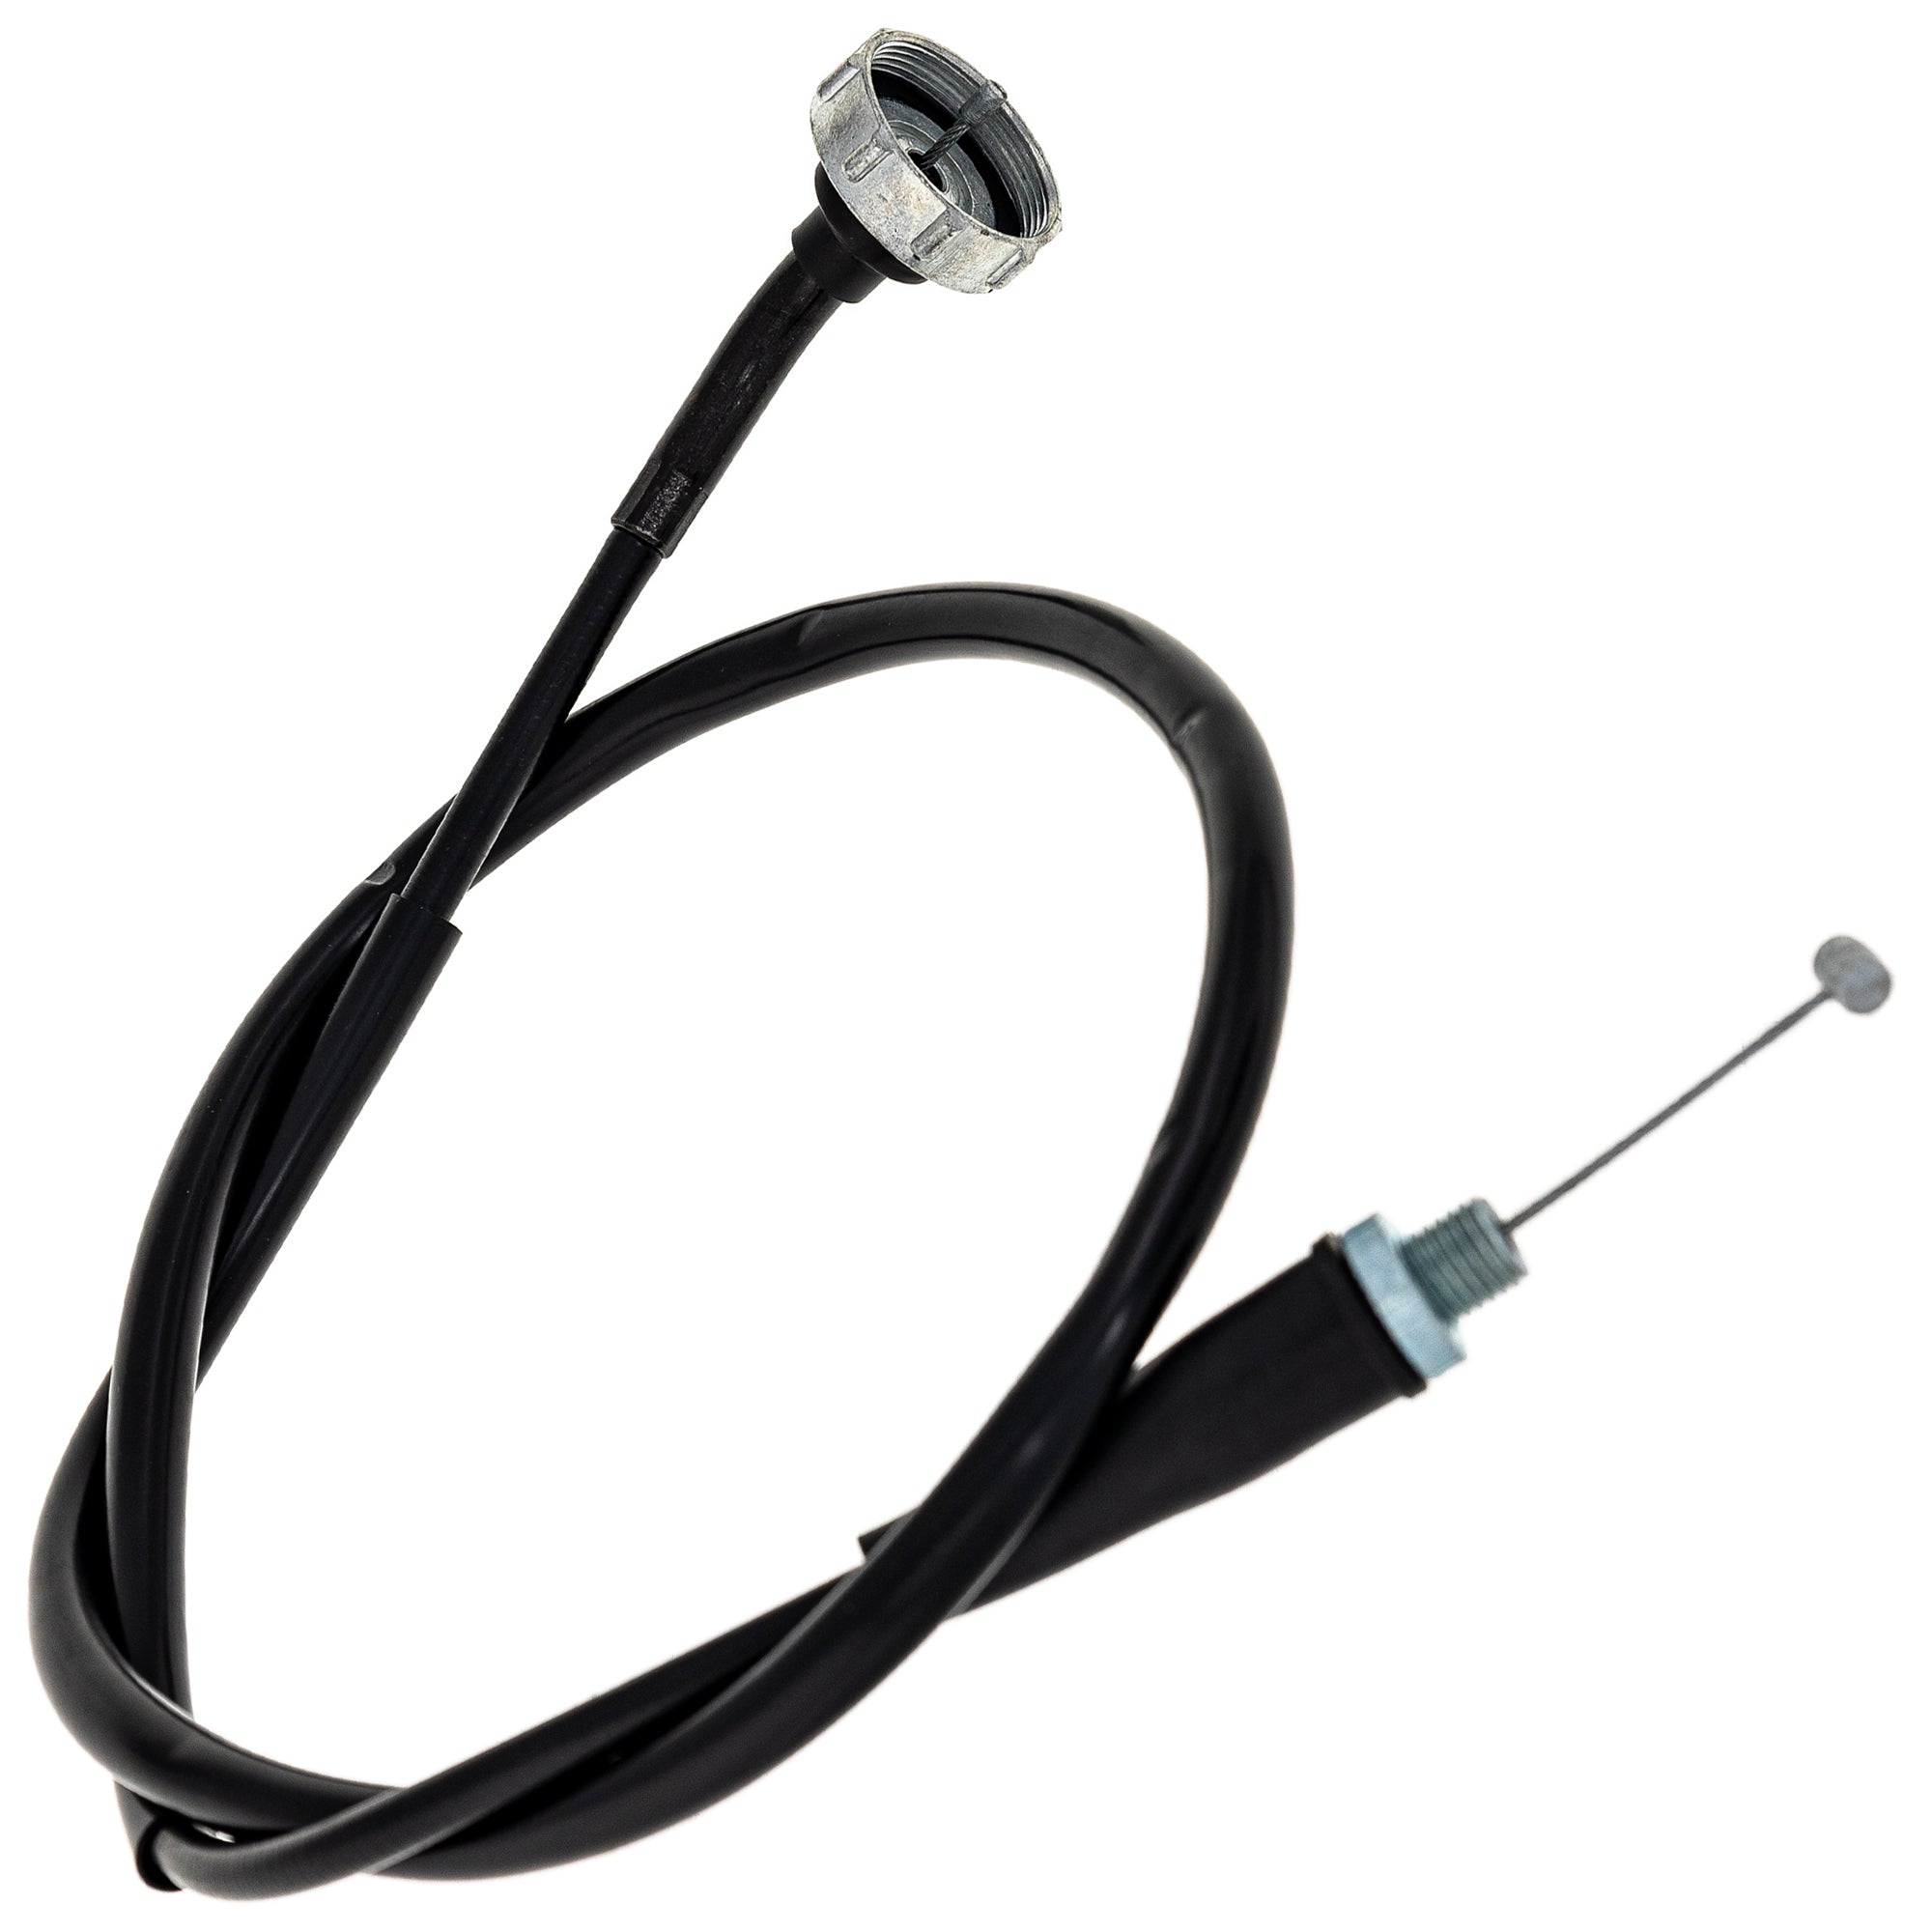 Throttle Cable For Honda 17920-VM6-315 17920-VM6-305 17920-HB6-315 17920-HB6-305